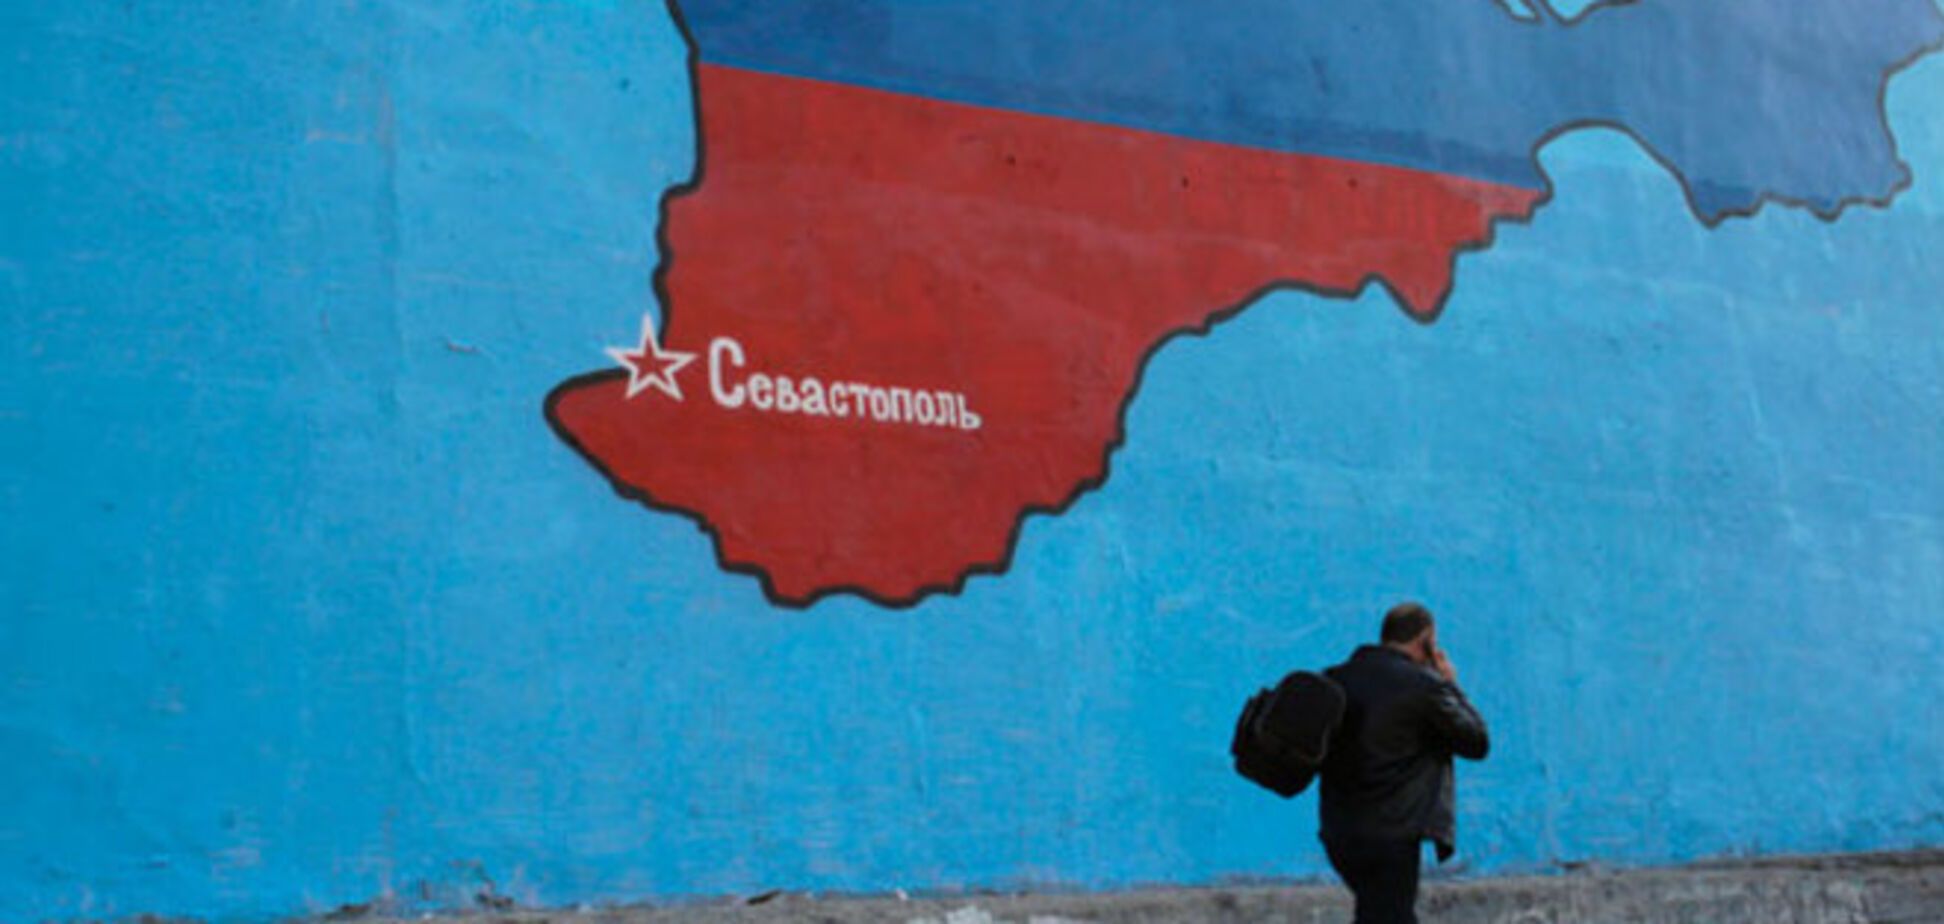 Глава Госдумы обвинил в аннексии Крыма Украину